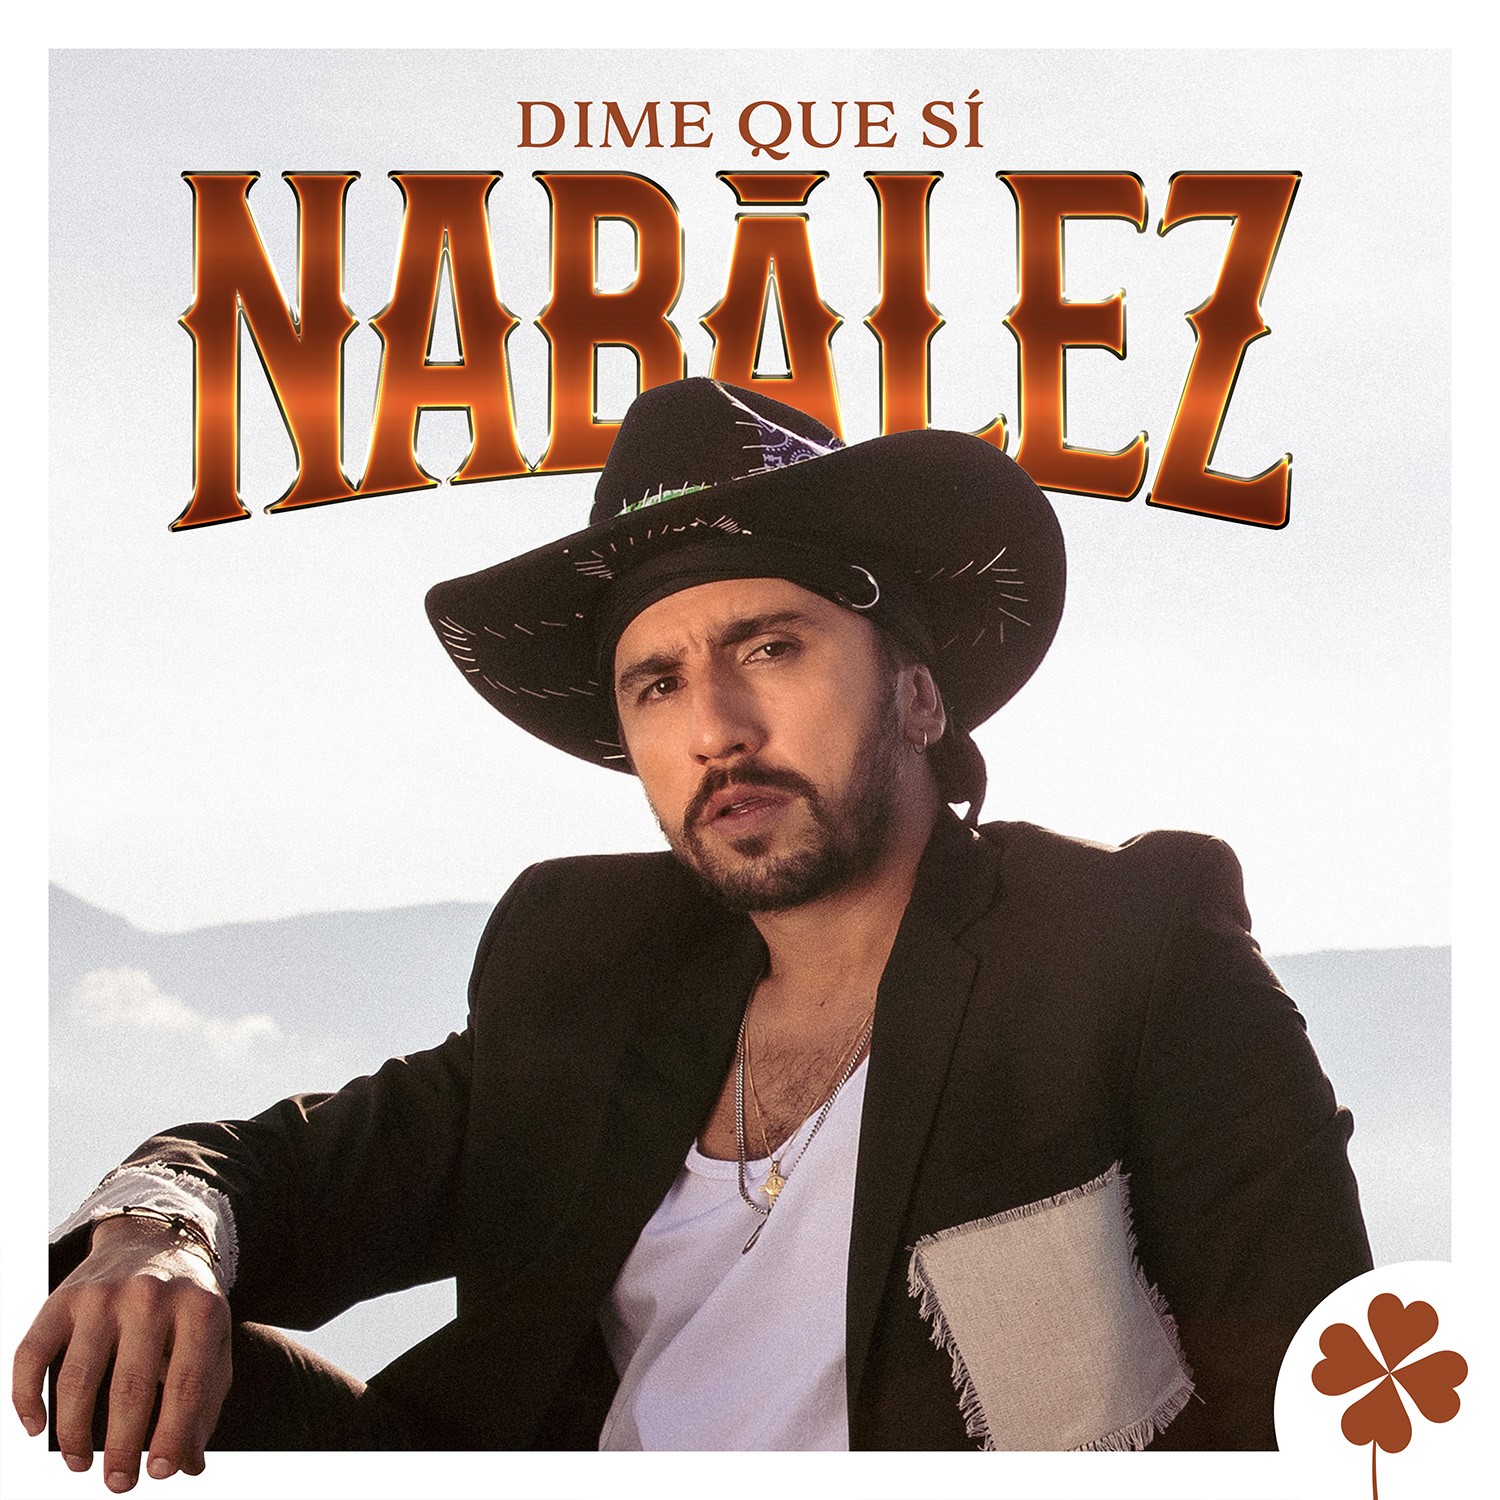 Al ritmo de regional Mexicano Nabález llega con el lanzamiento de su canción ‘Dime que sí’